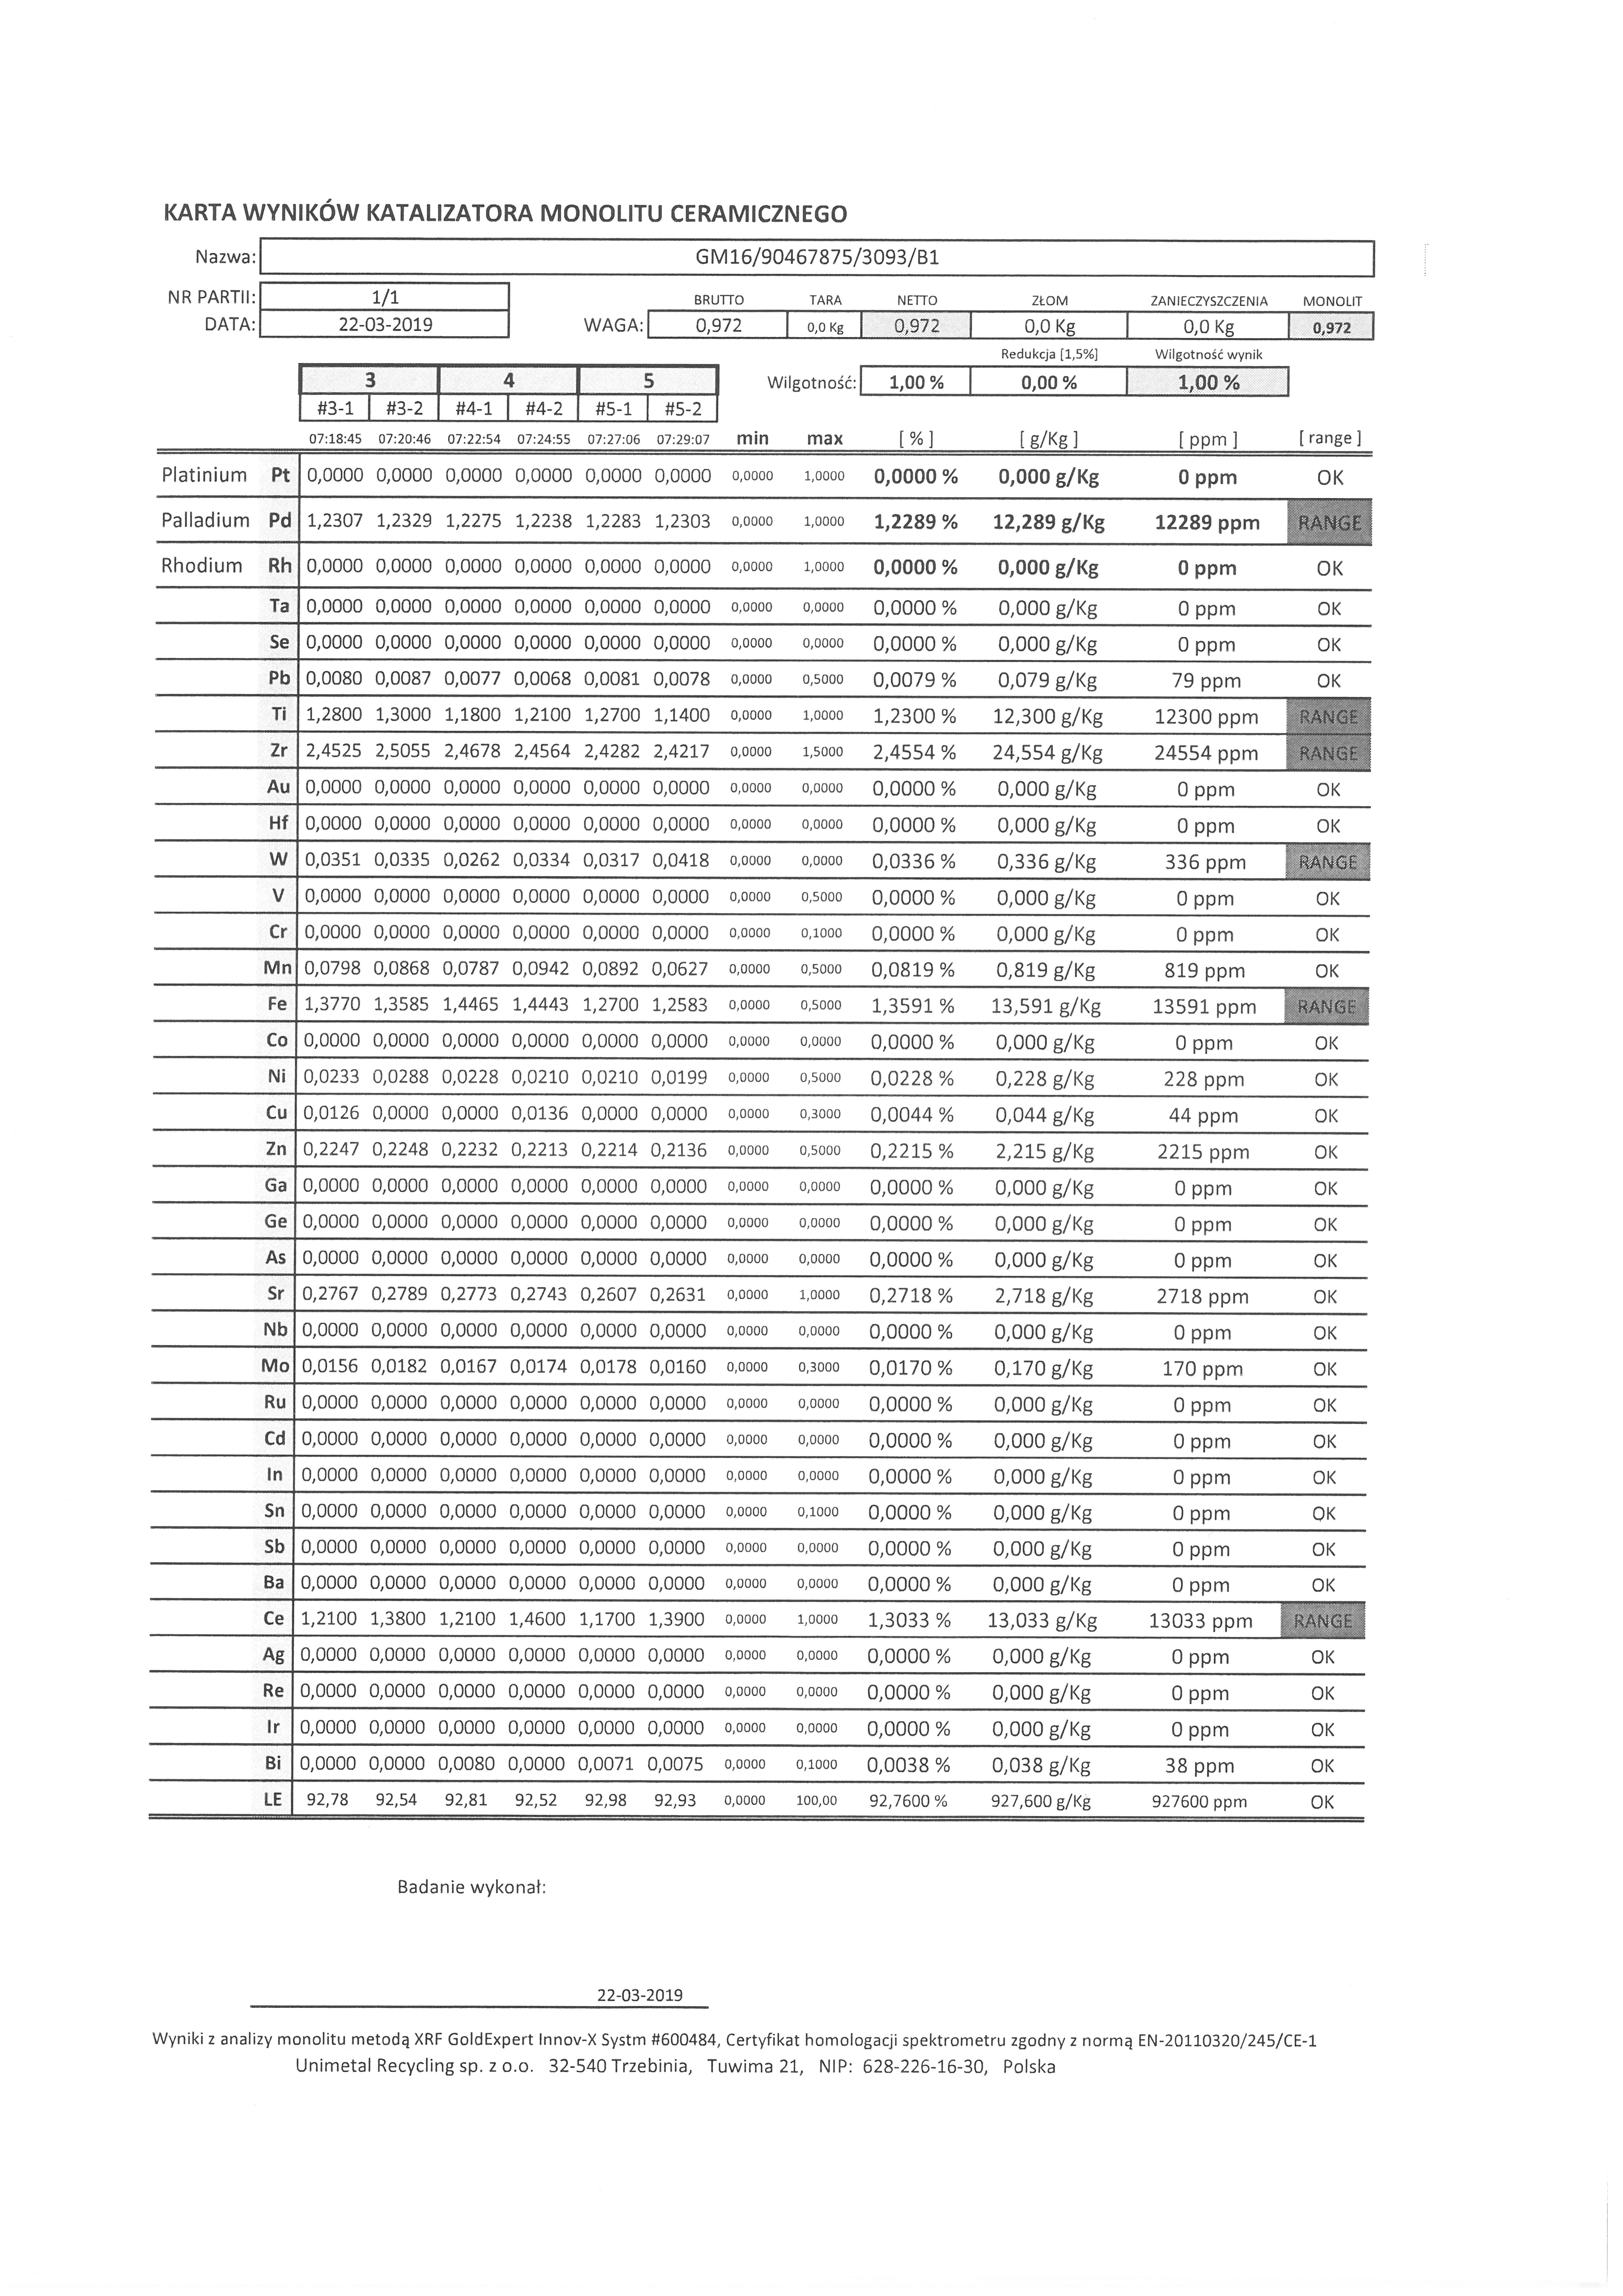 Zawartość metali szlachetnych w katalizatorze GM16/90467875/3093/B1 - analiza XRF